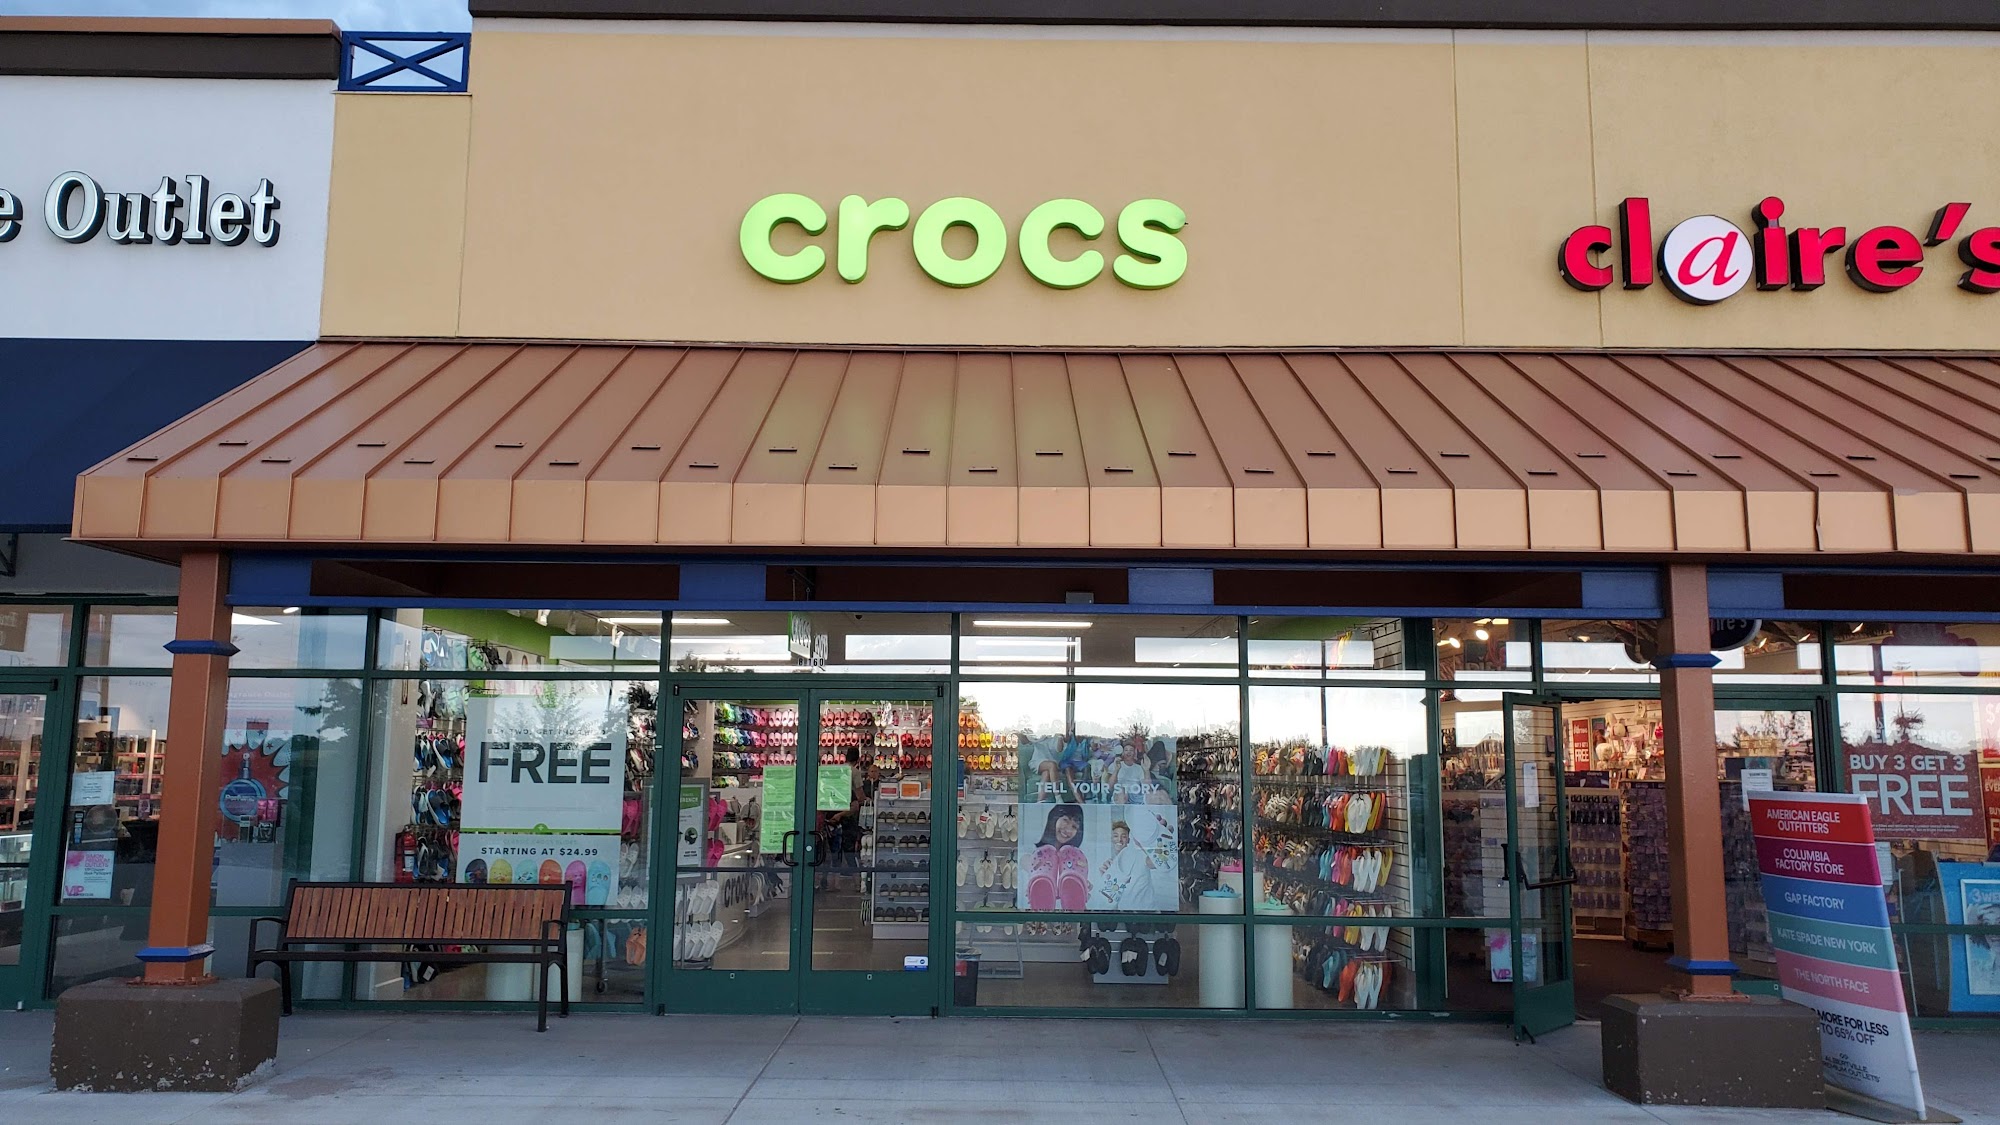 Crocs at Albertville Outlet